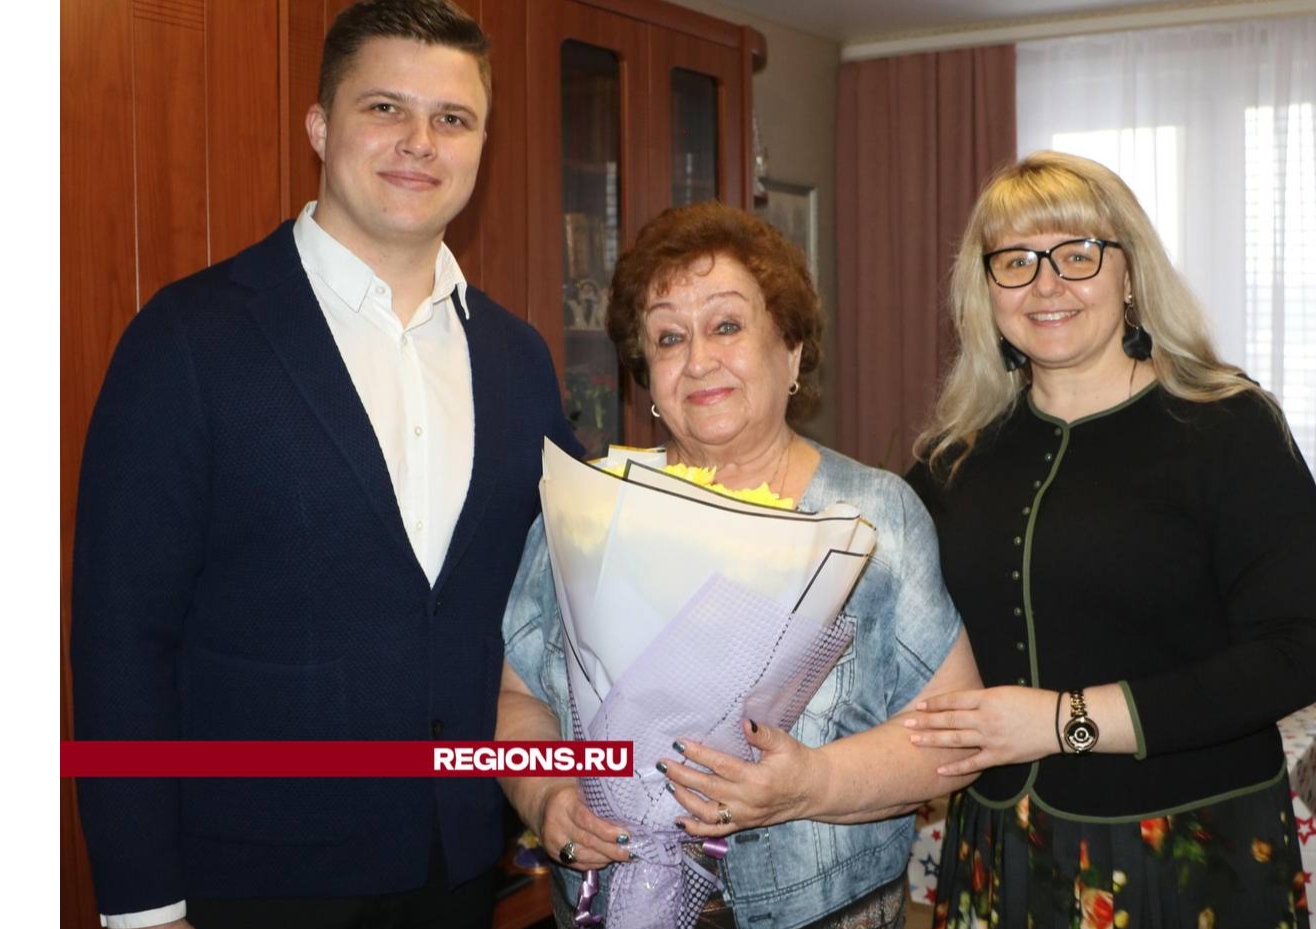 Учителя из Лотошино поздравили с юбилеем от имени губернатора Подмосковья